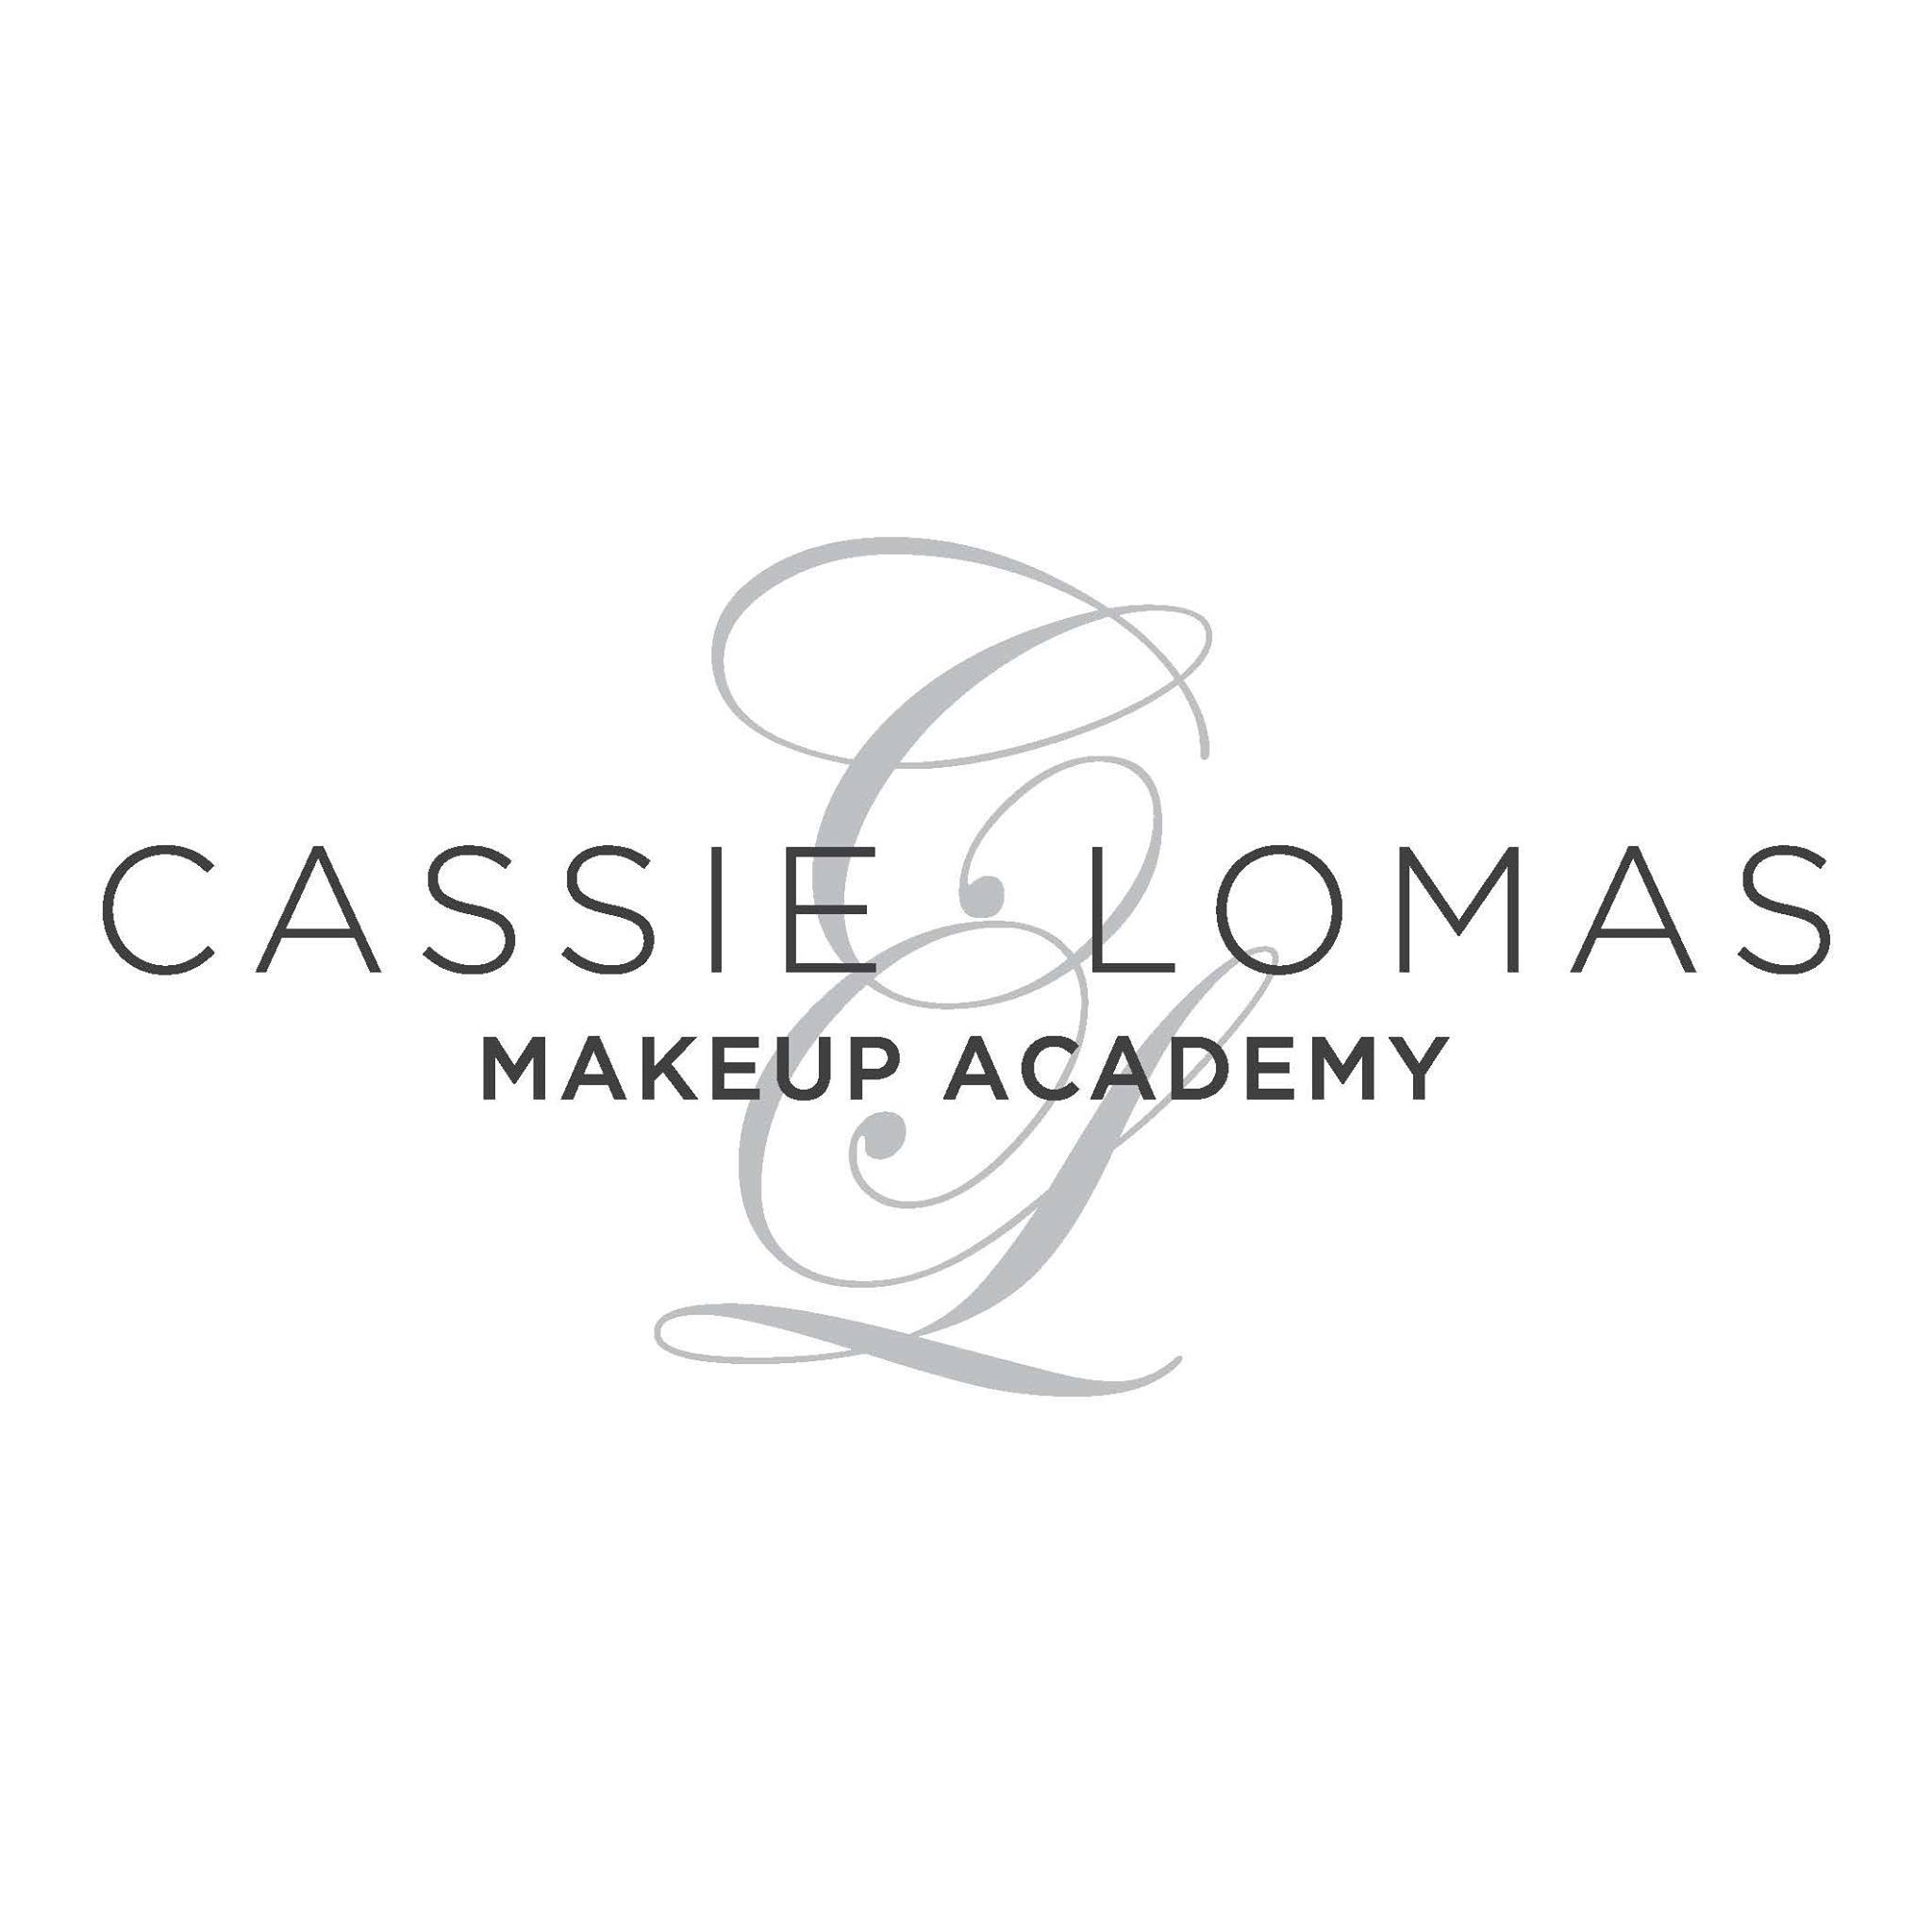 Cassie Lomas Makeup Academy Logo